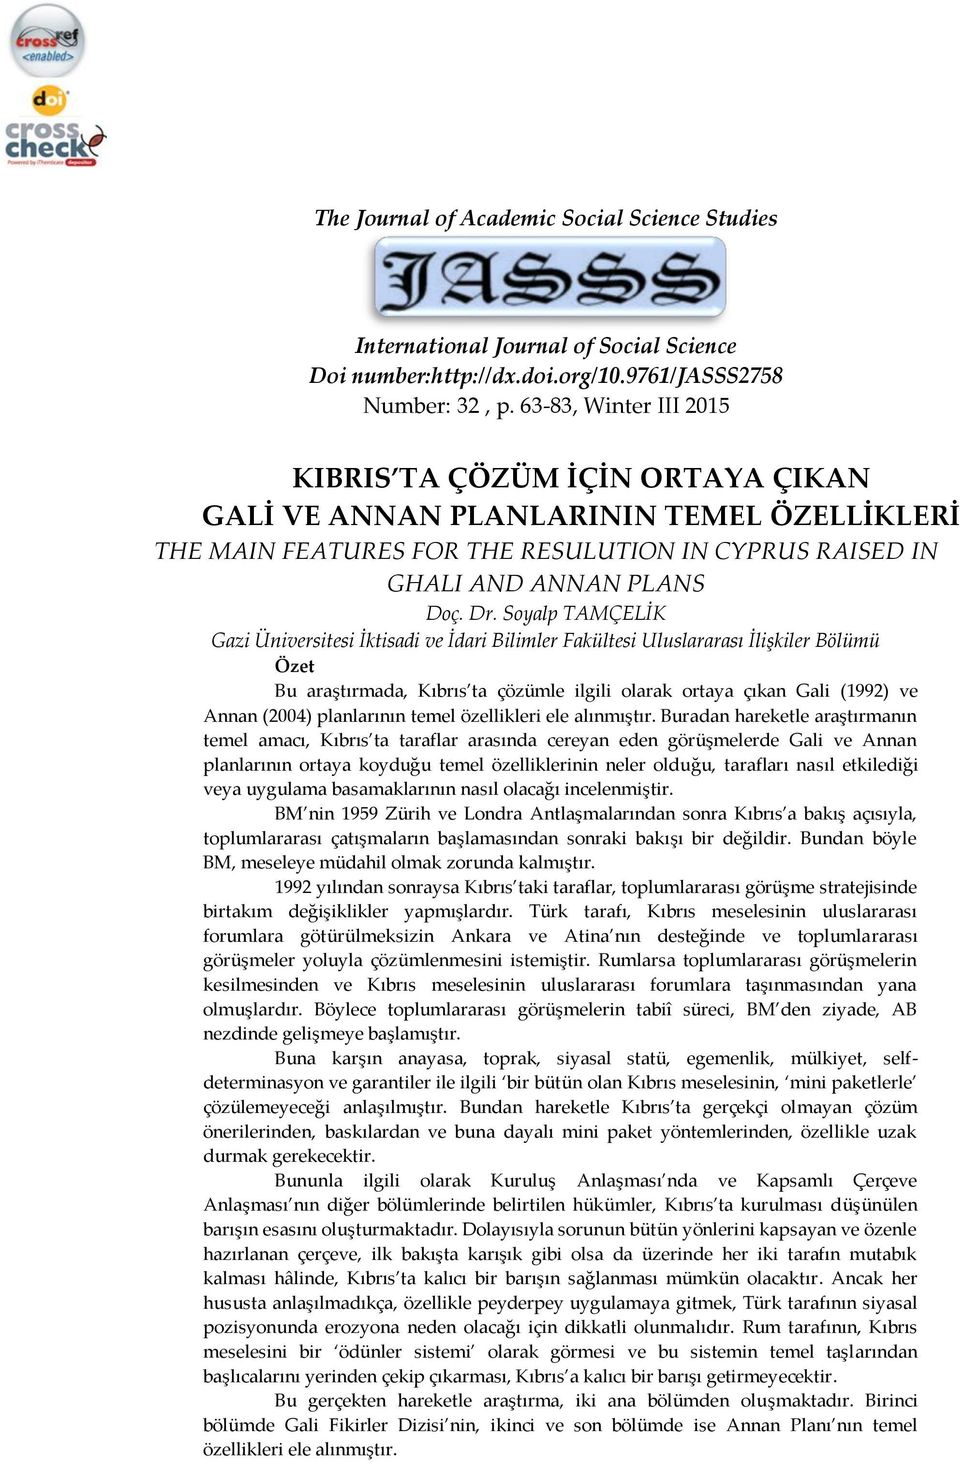 Soyalp TAMÇELİK Gazi Üniversitesi İktisadi ve İdari Bilimler Fakültesi Uluslararası İlişkiler Bölümü Özet Bu araştırmada, Kıbrıs ta çözümle ilgili olarak ortaya çıkan Gali (1992) ve Annan (2004)